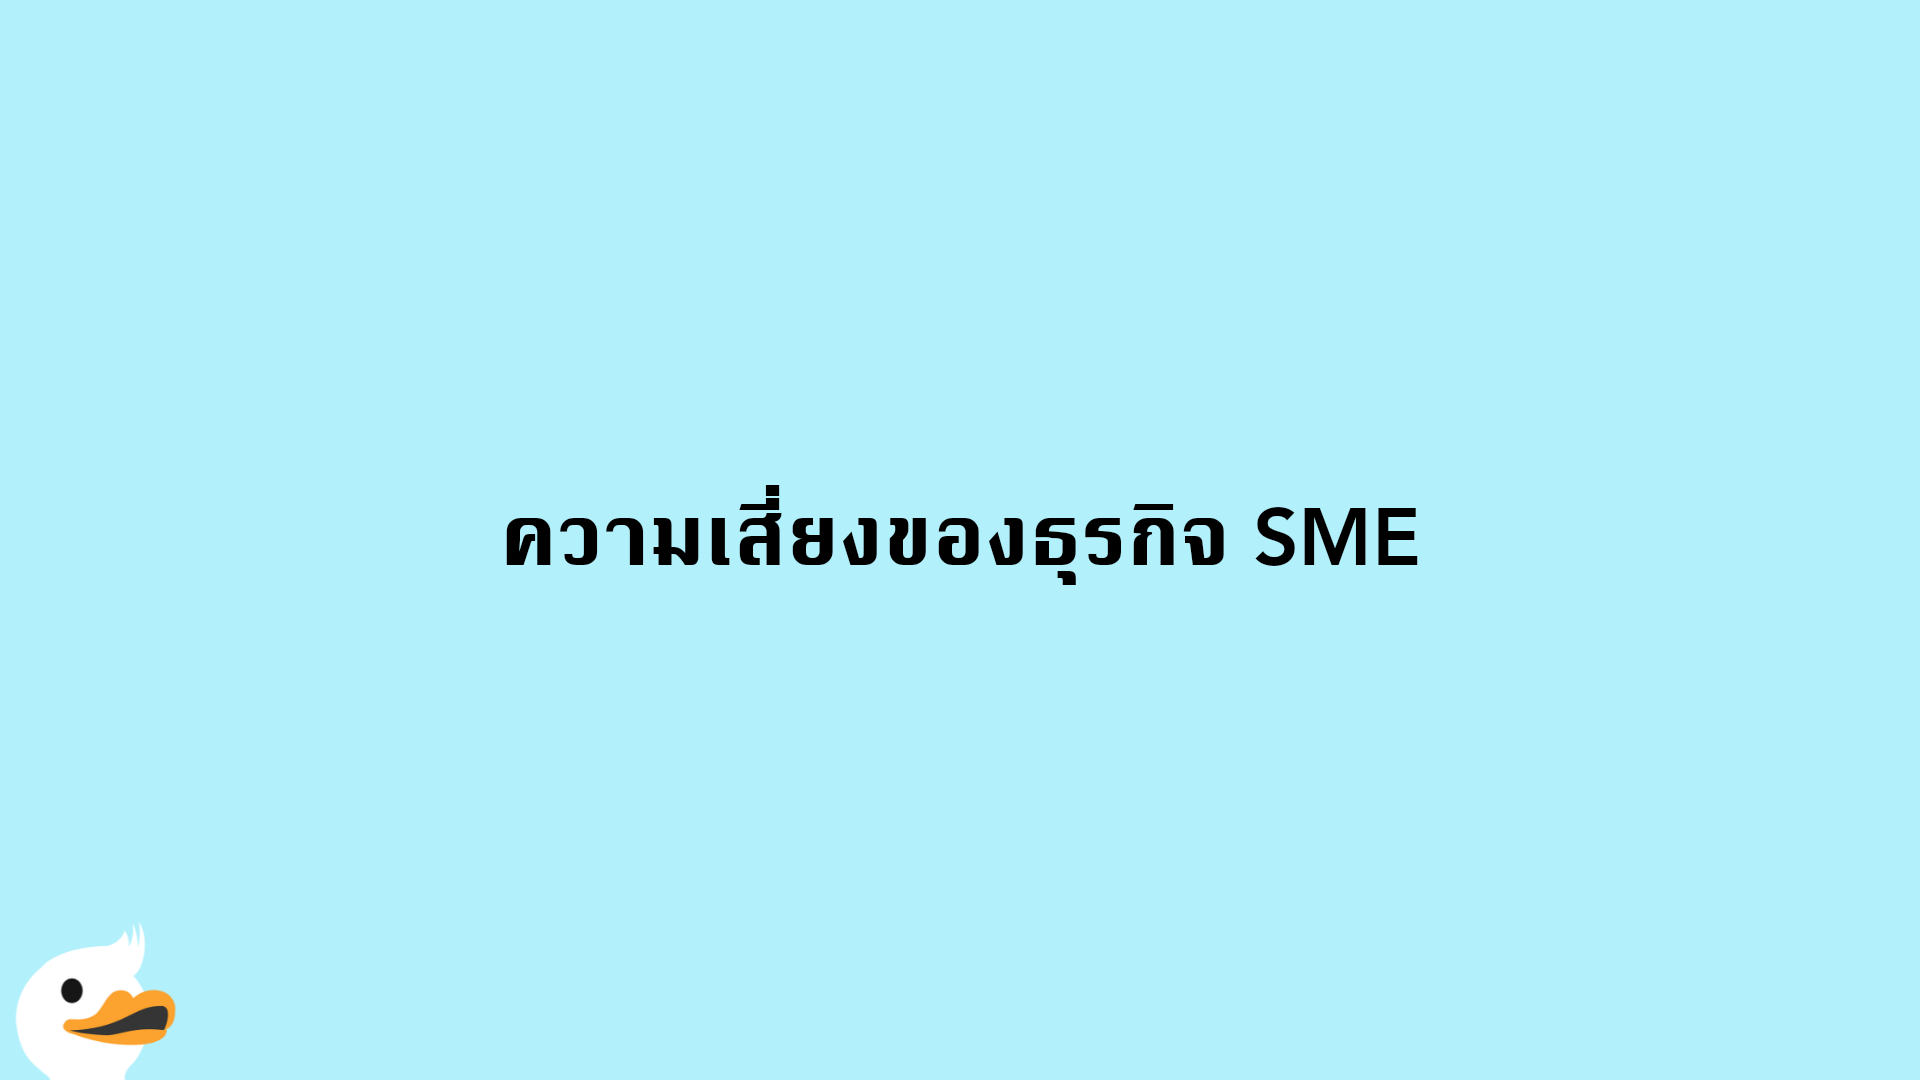 ความเสี่ยงของธุรกิจ SME